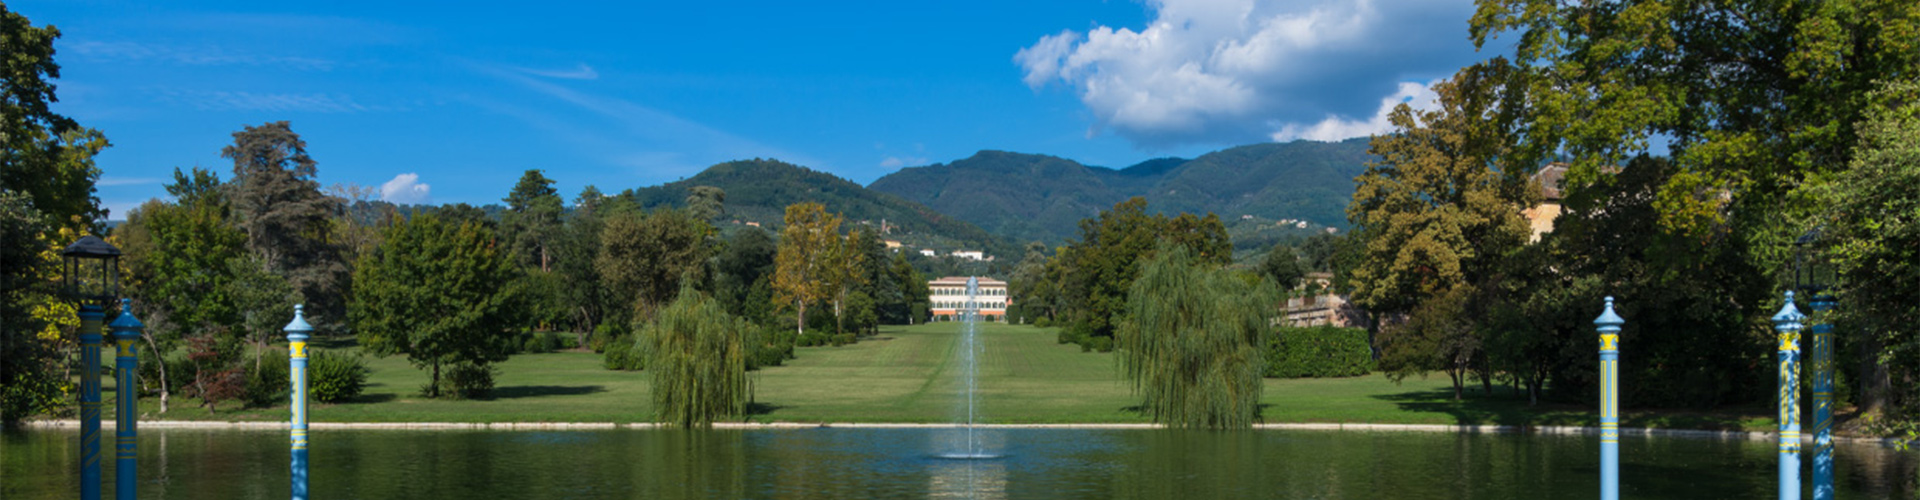 Villa Reale di Marlia – la Toscana che non ti aspetti